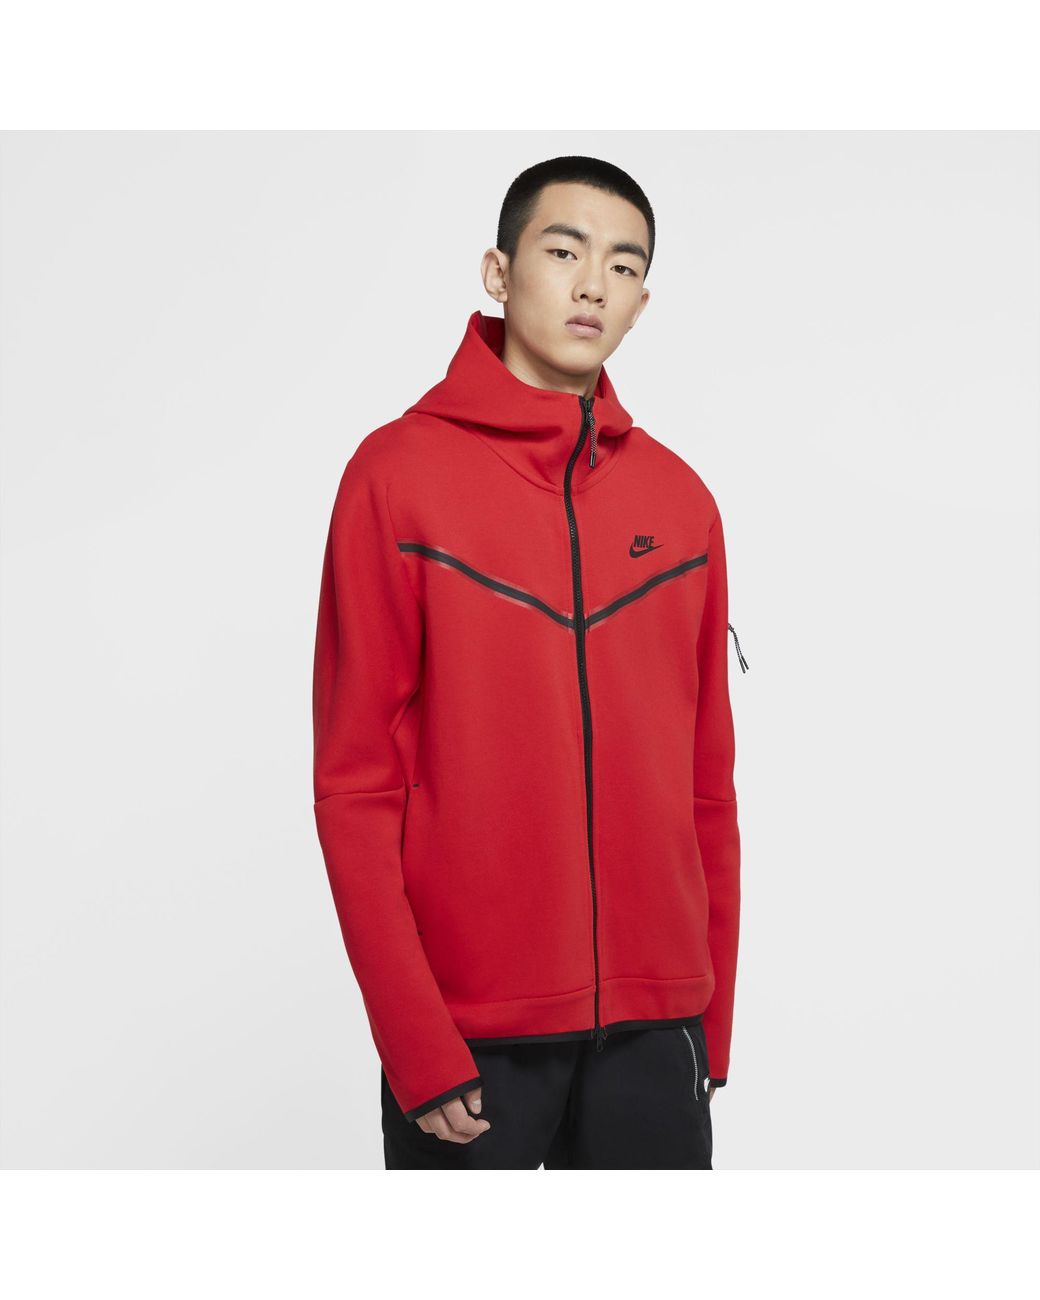 Nike Sportswear Tech Fleece Full-zip Hoodie in Red for Men - Lyst